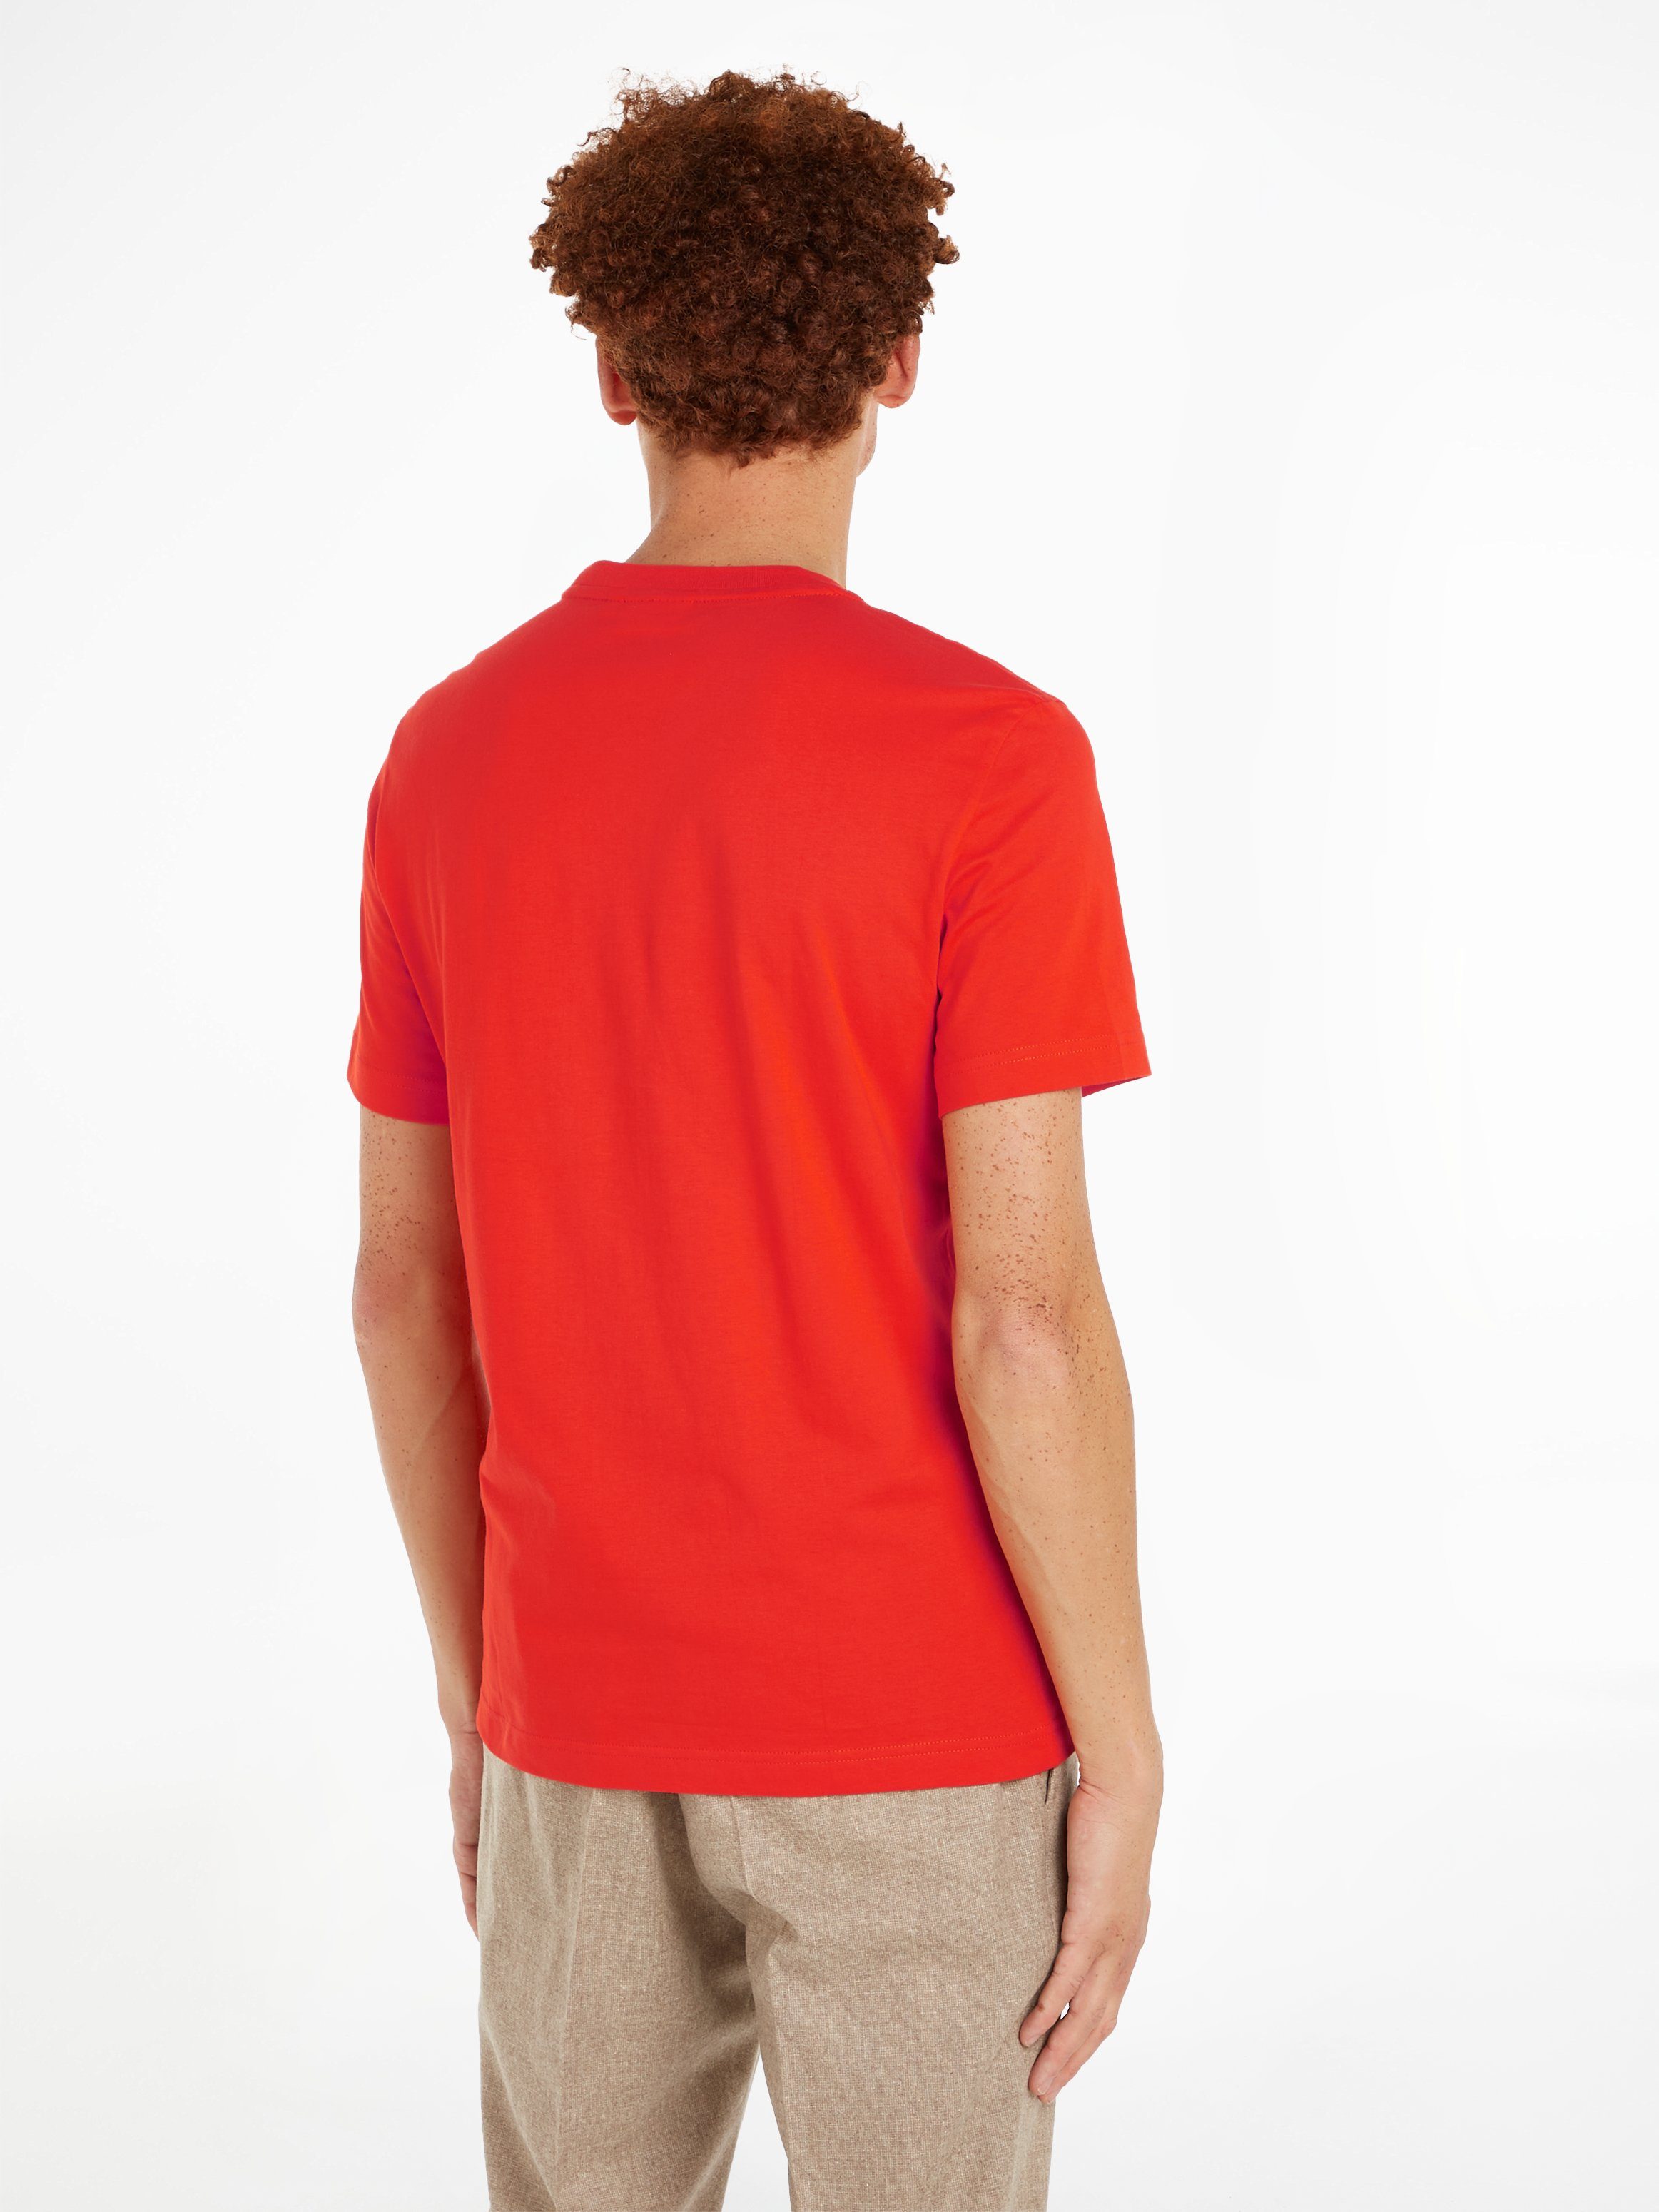 CONTRAST Klein mit T-SHIRT LOGO Calvin Spicy CK-Logodruck LINE Orange T-Shirt